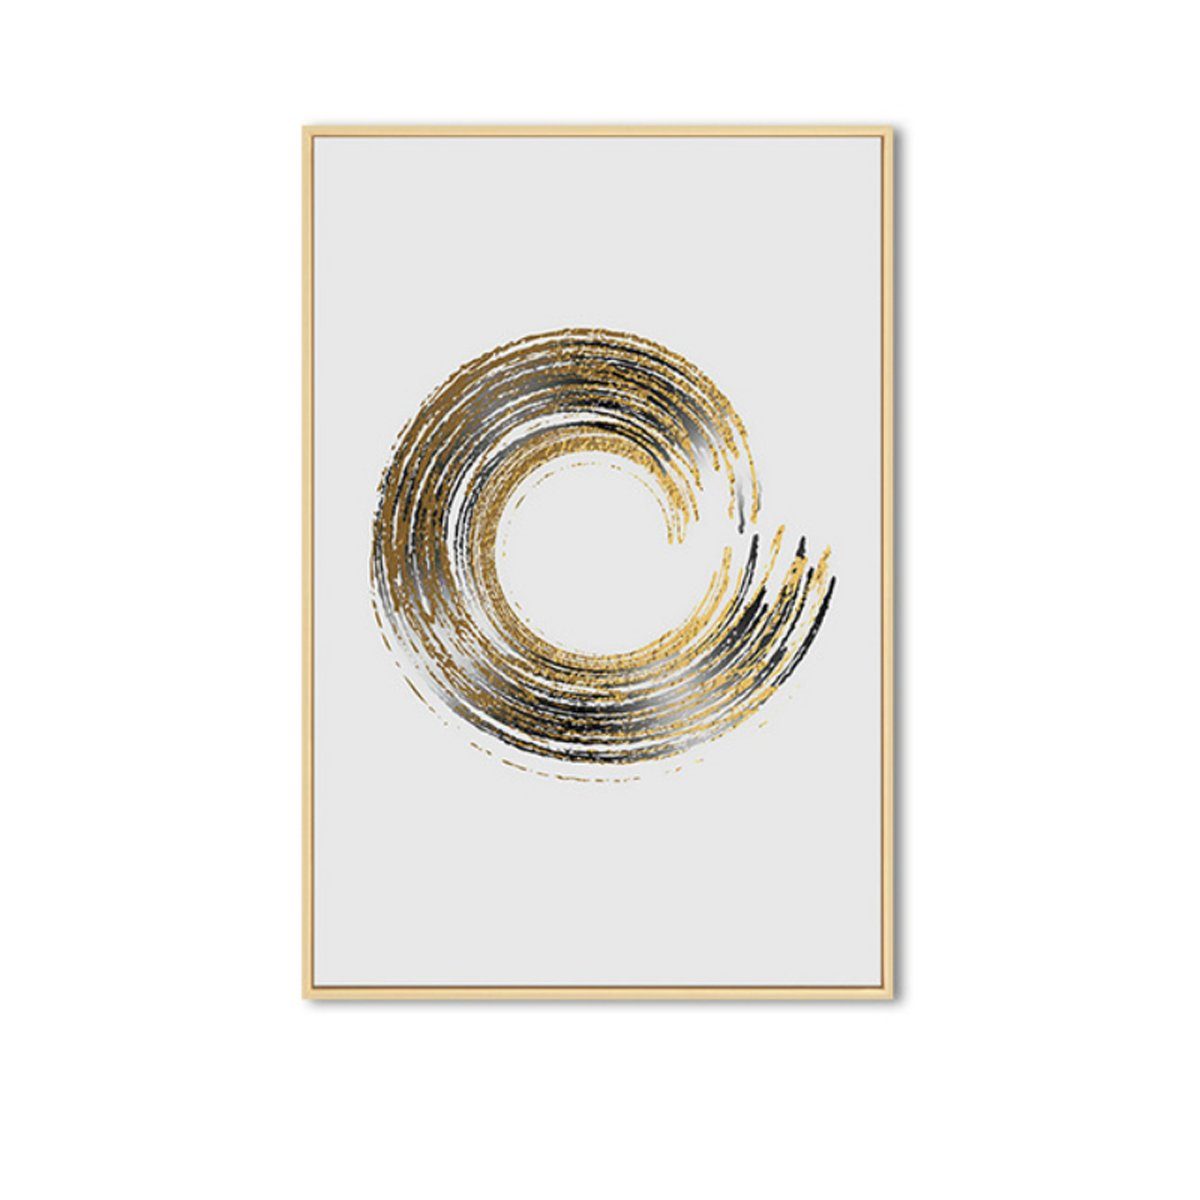 TPFLiving Kunstdruck (OHNE RAHMEN) Poster - Leinwand - Wandbild, Smile and Love - Gold auf weißem Hintergrund - Wanddeko Wohnzimmer - (7 verschiedene Größen zur Auswahl - Auch im günstigen 3-er Set), Farben: Gold, Weiß - Größe: 13x18cm